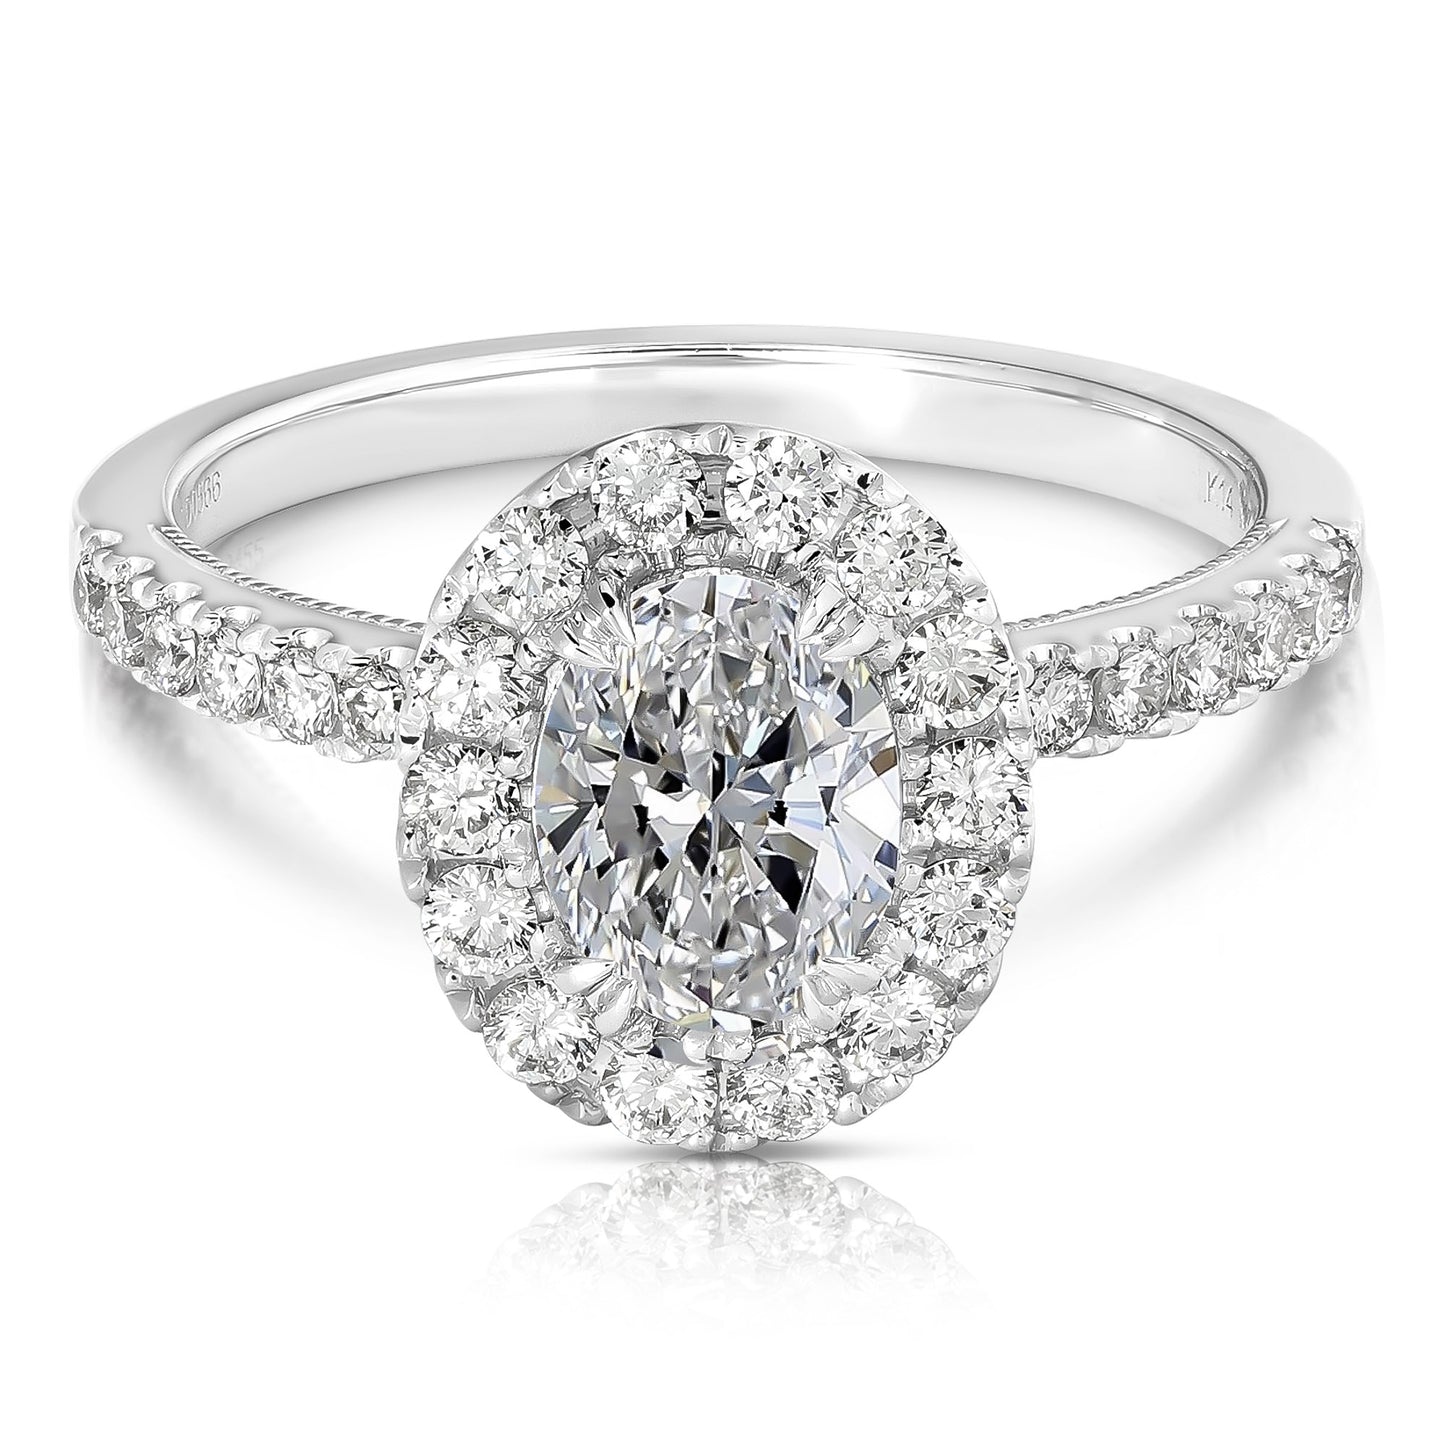 1 個 CT 中心橢圓形光環鑽石訂婚戒指